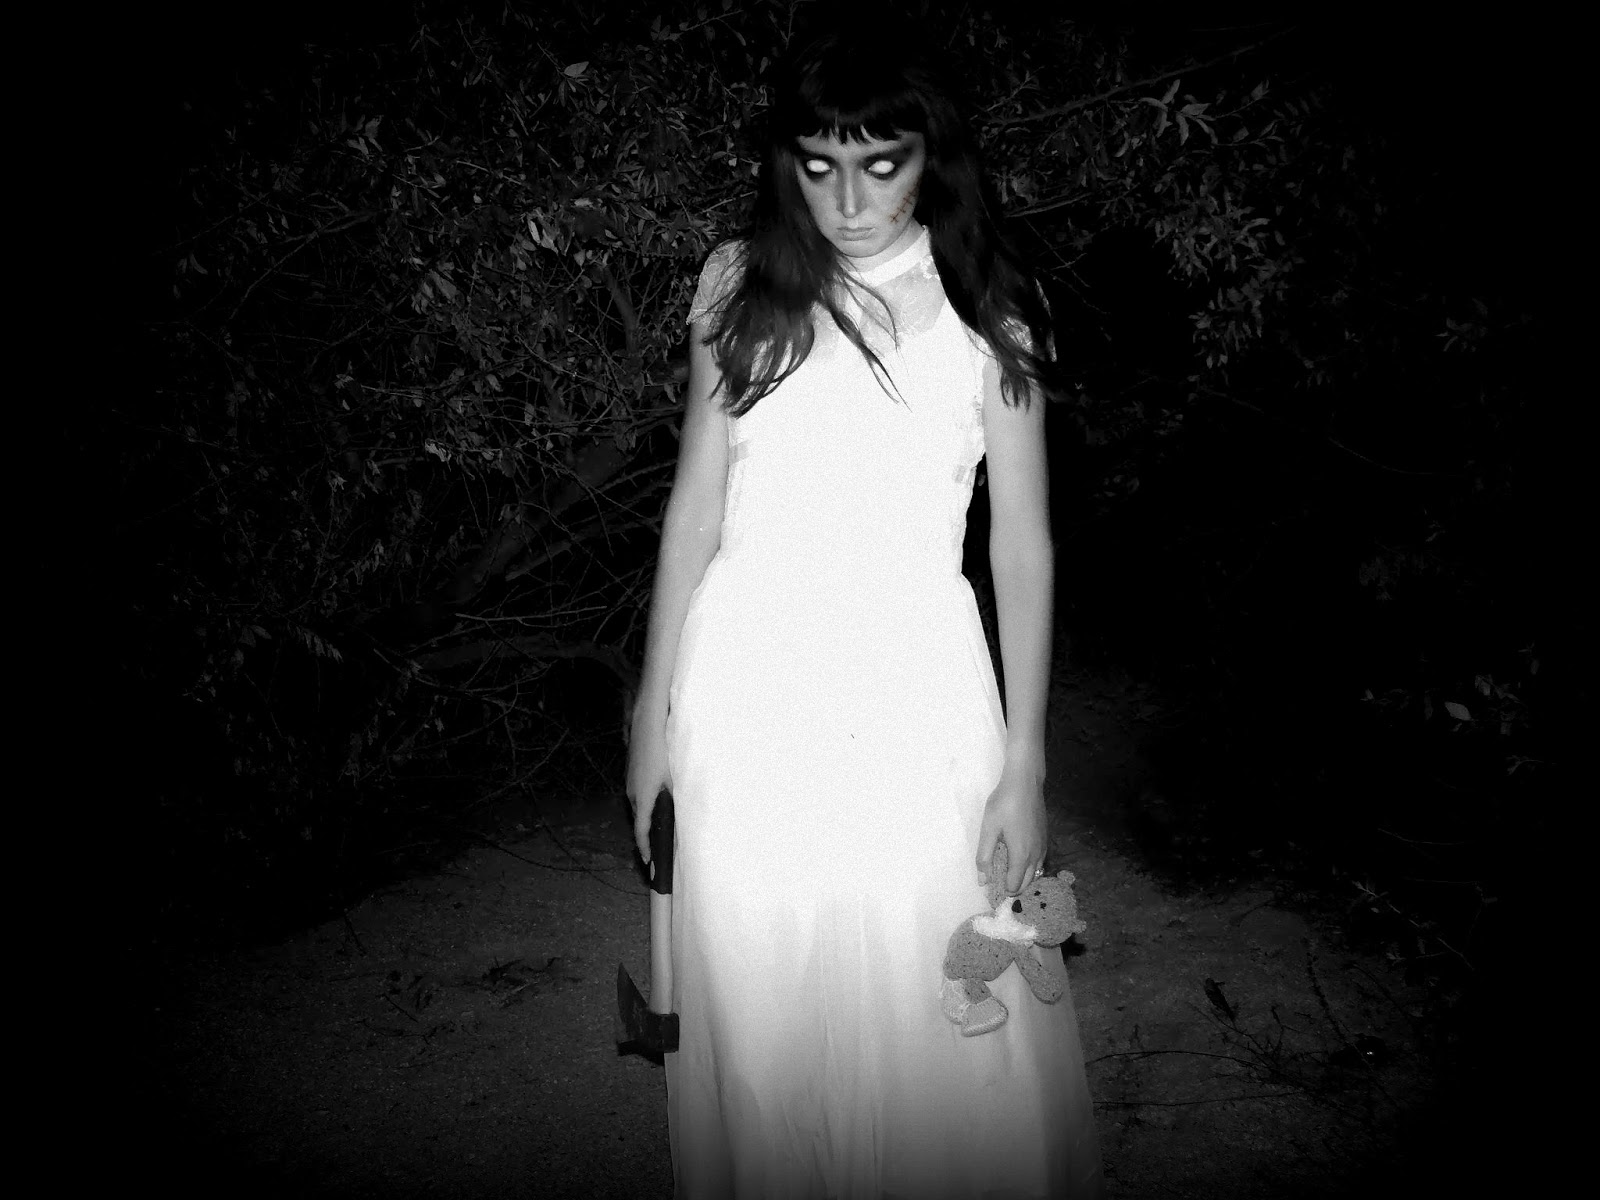 Страшная девочка в белом платье